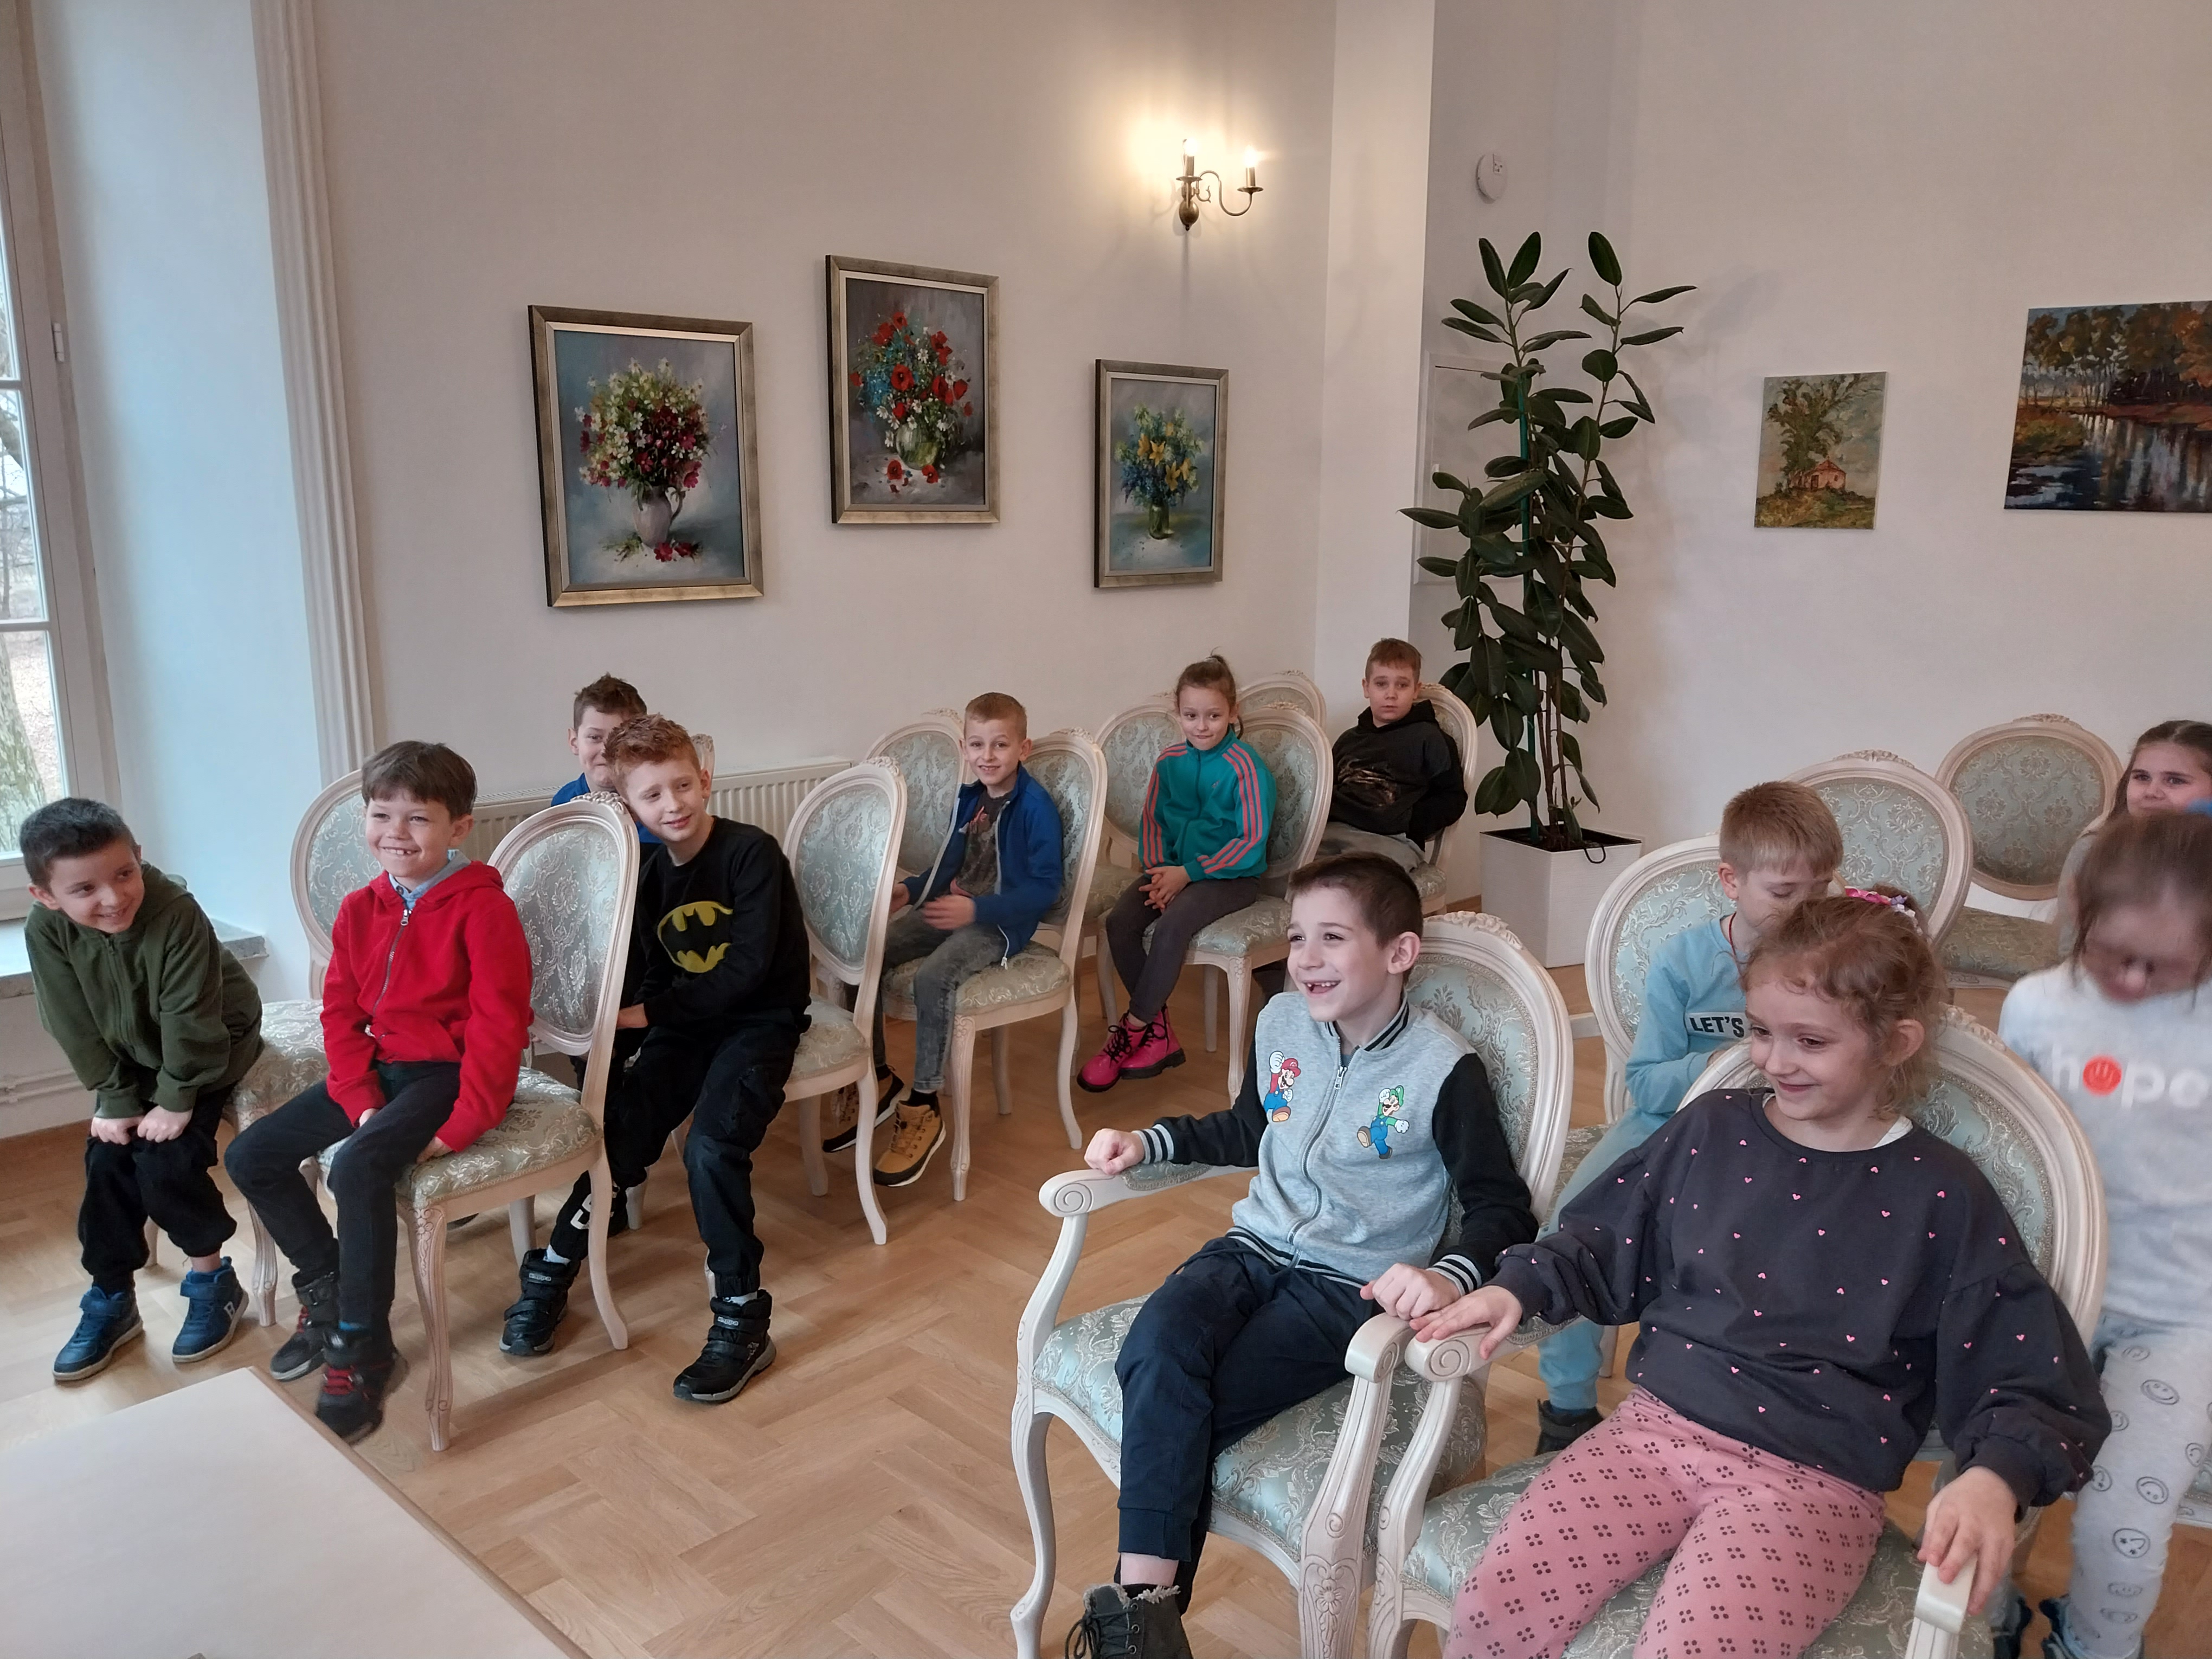 Grupa dzieci siedzi w sali balowej